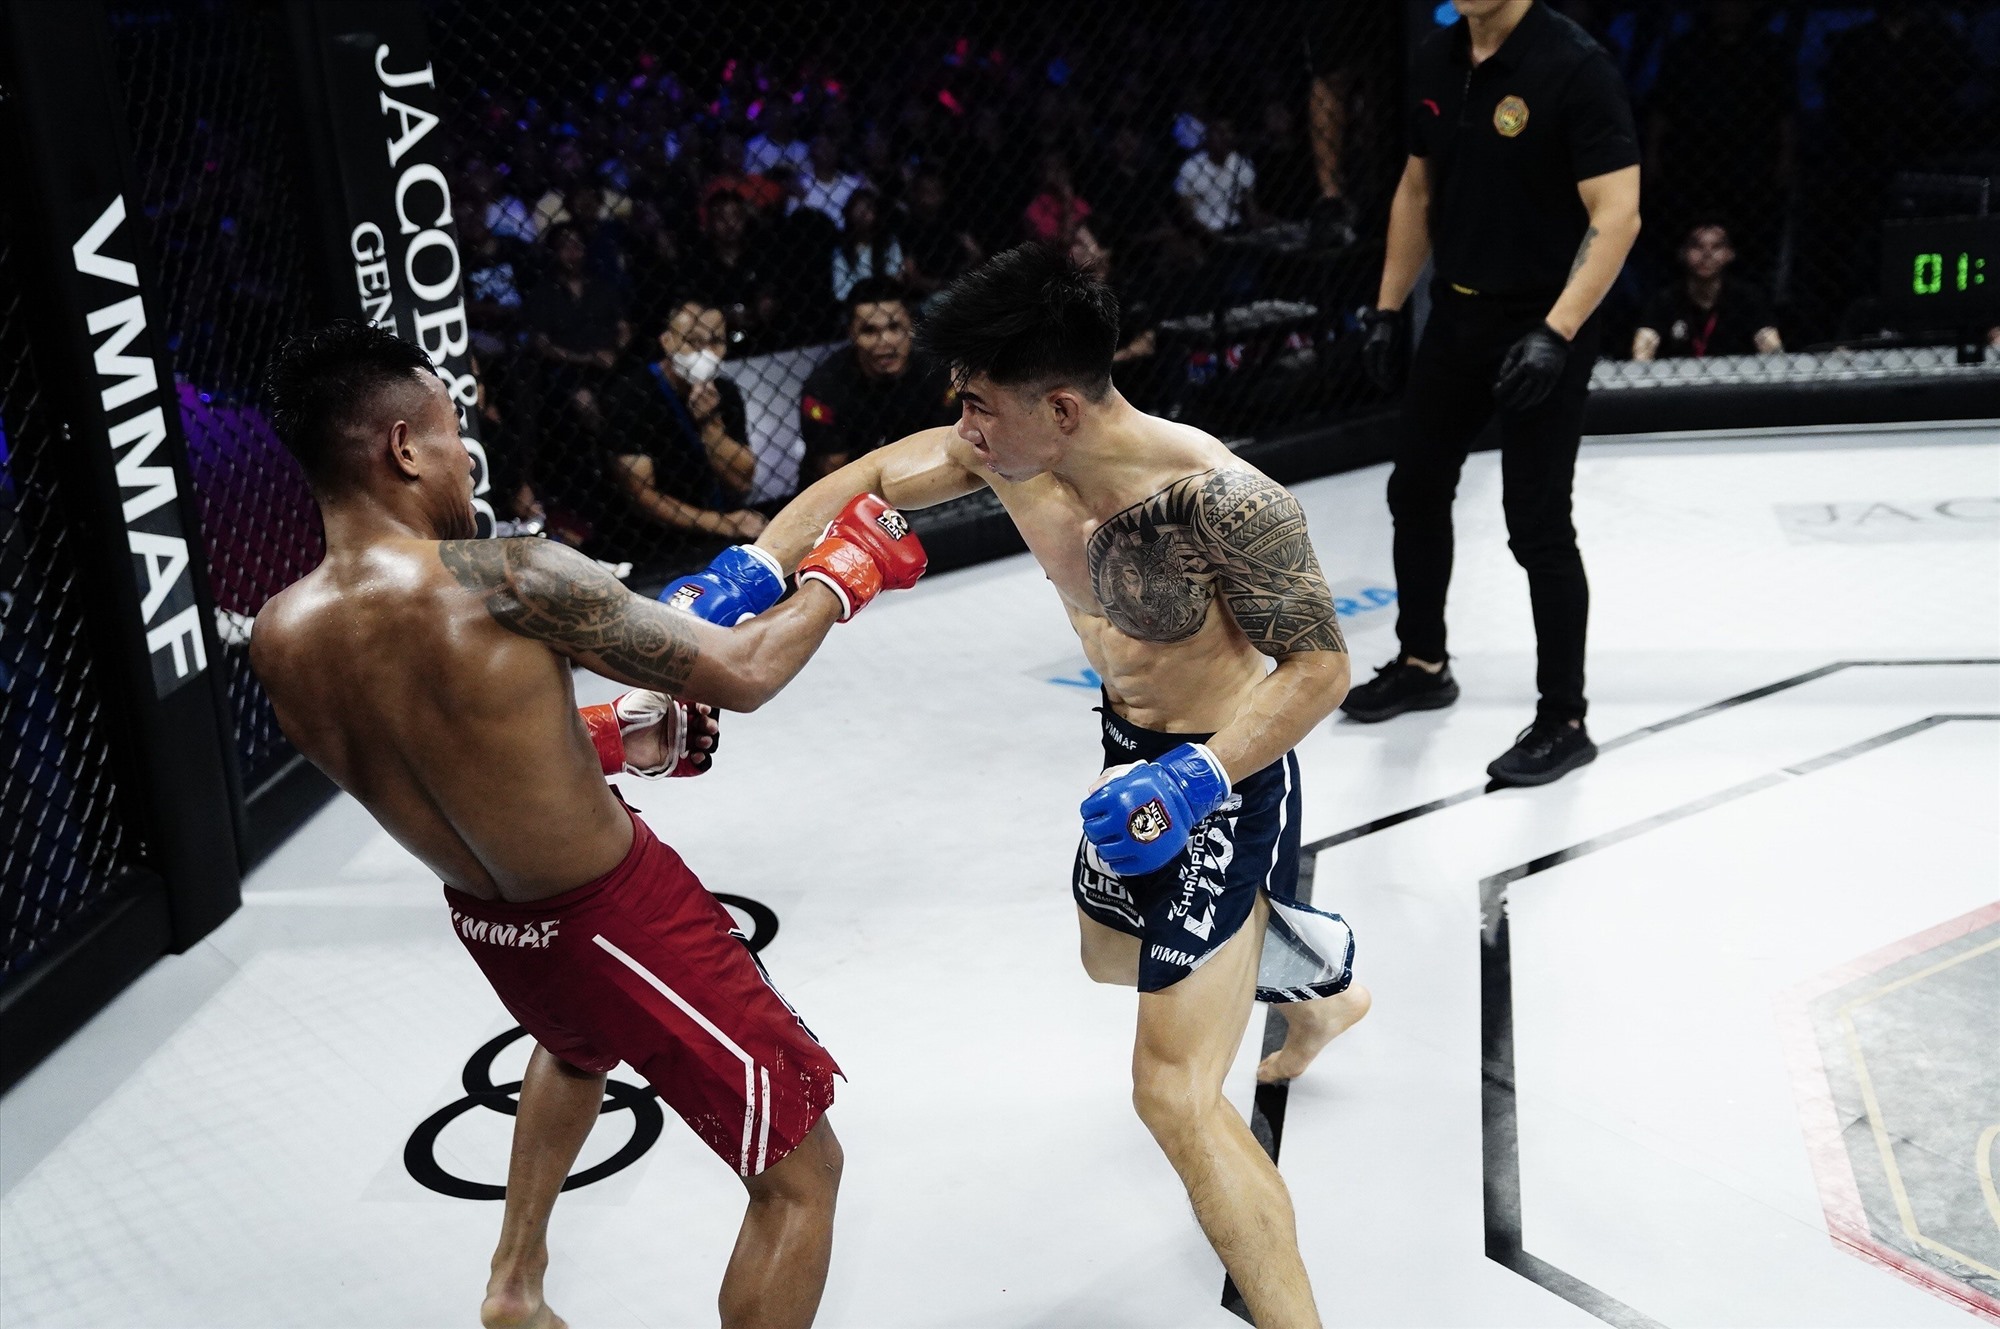 Ở trận tranh đai vô địch 56kg nam, Phạm Văn Nam (xanh) thắng submission Đinh Văn Hương (đỏ) bằng kỹ thuật siết cổ sau ở 3 phút 59 giây hiệp 3.